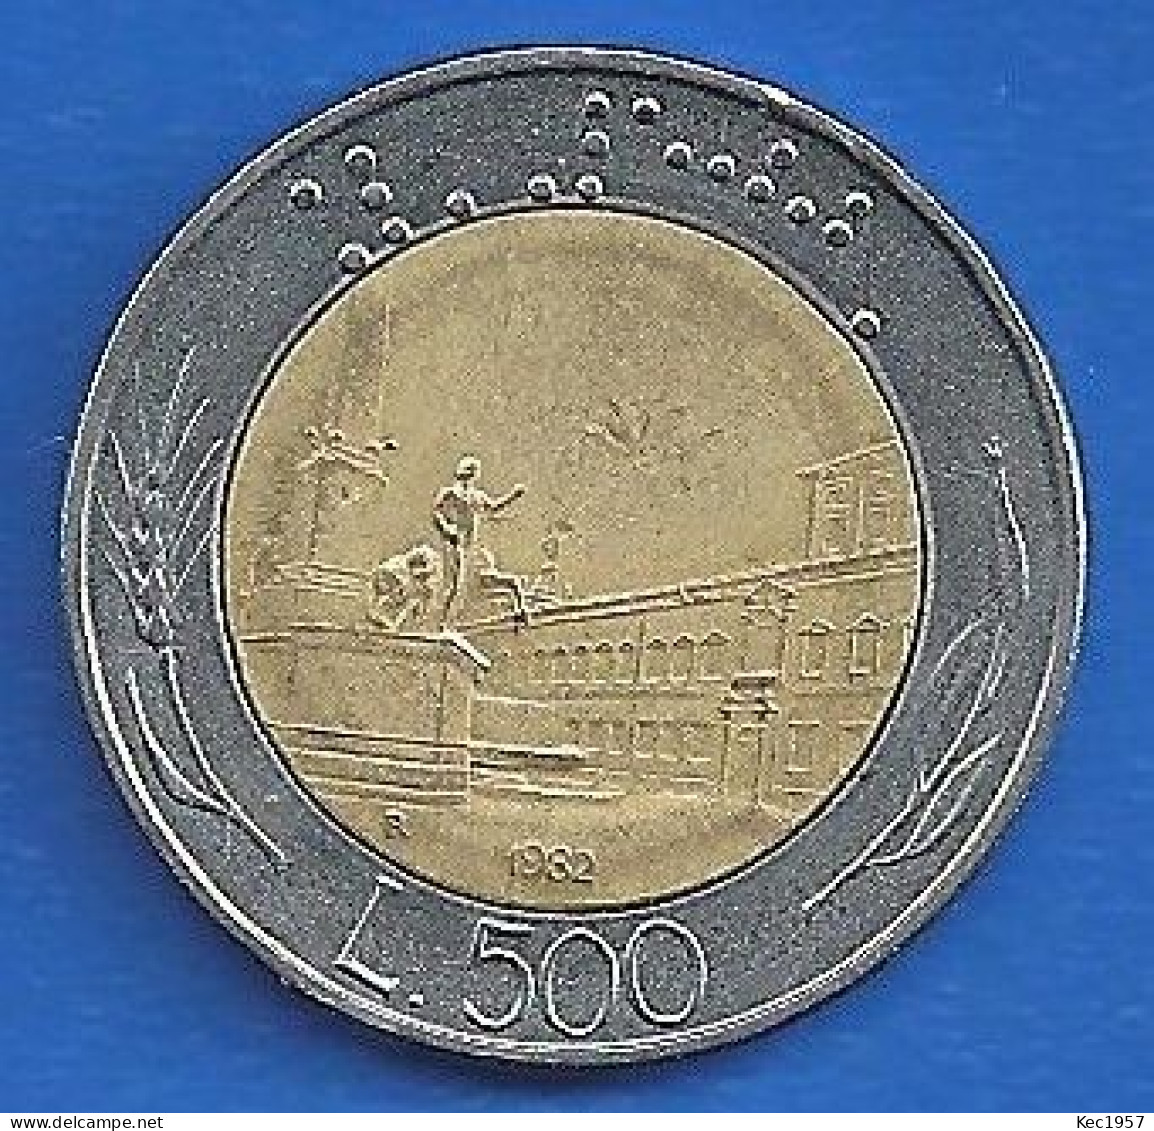 Italienische 500 Lire Munze 1982,um 180 Grad Gedreht. - 500 Liras